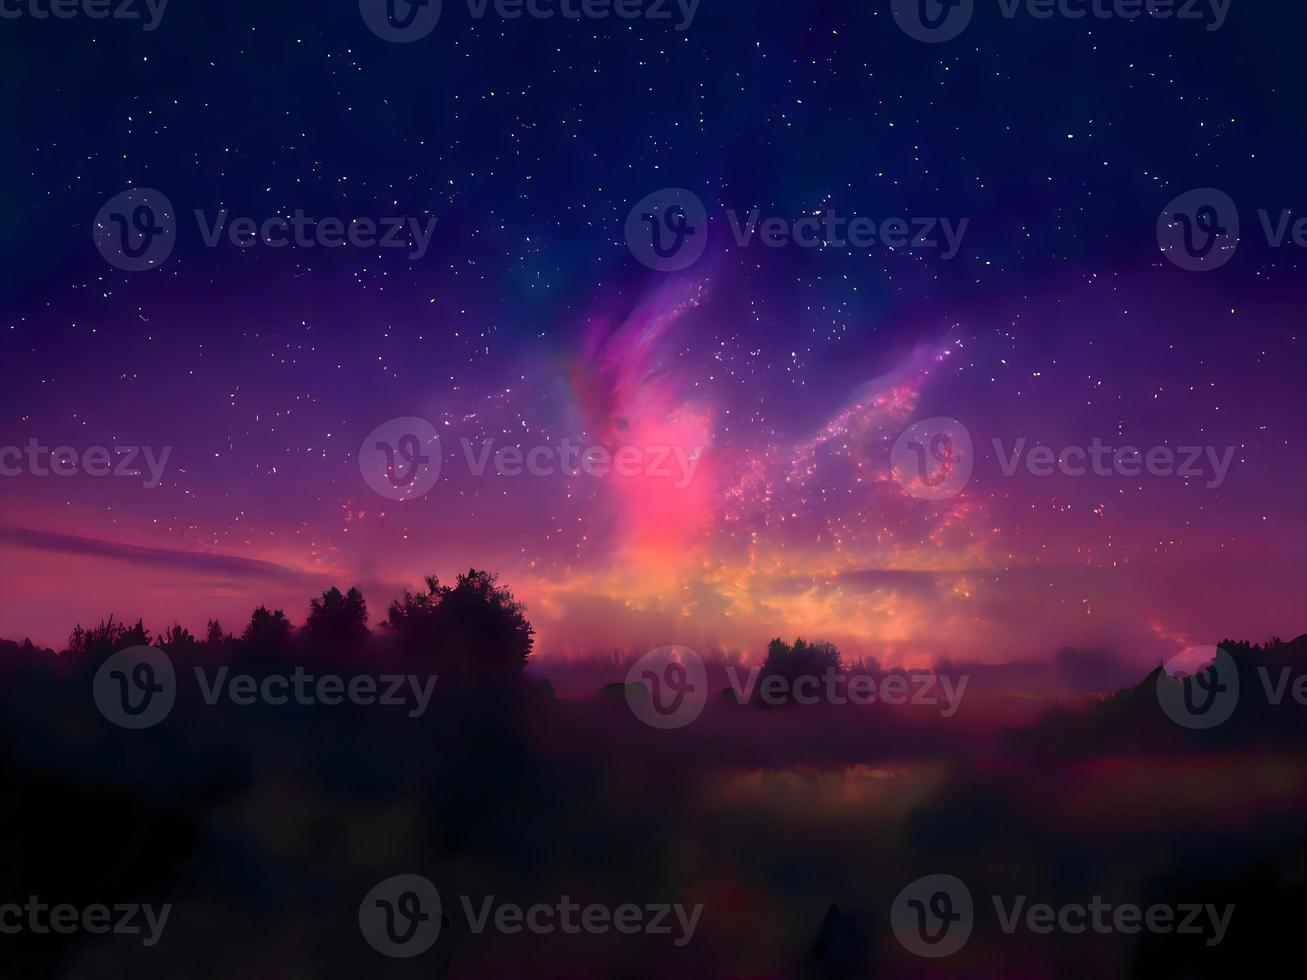 Milchstraße und rosa Licht in den Bergen. nacht bunte landschaft. Sternenhimmel mit Hügeln. schönes Universum. Weltraumhintergrund mit Galaxie. Reisehintergrund foto